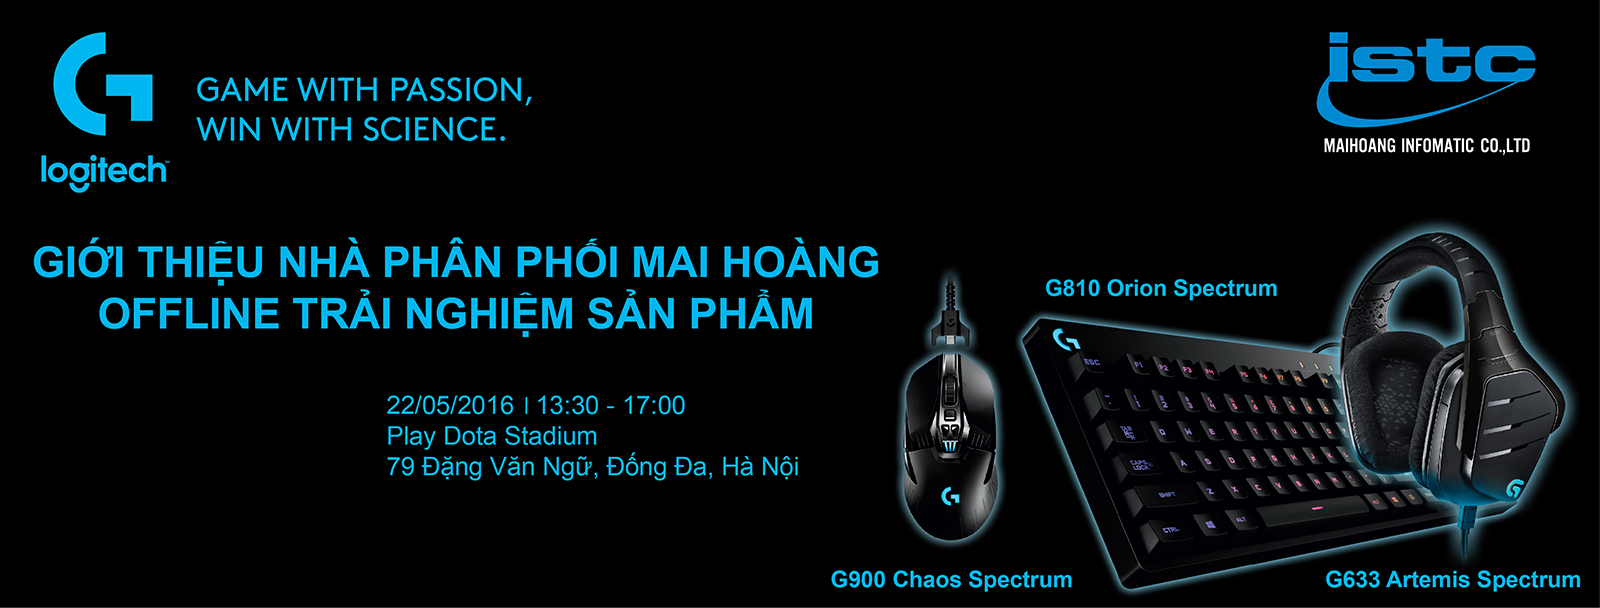 Cơ hội trải nghiệm sản phẩm mới của Logitech tại Hà Nội vào 22.5.2016